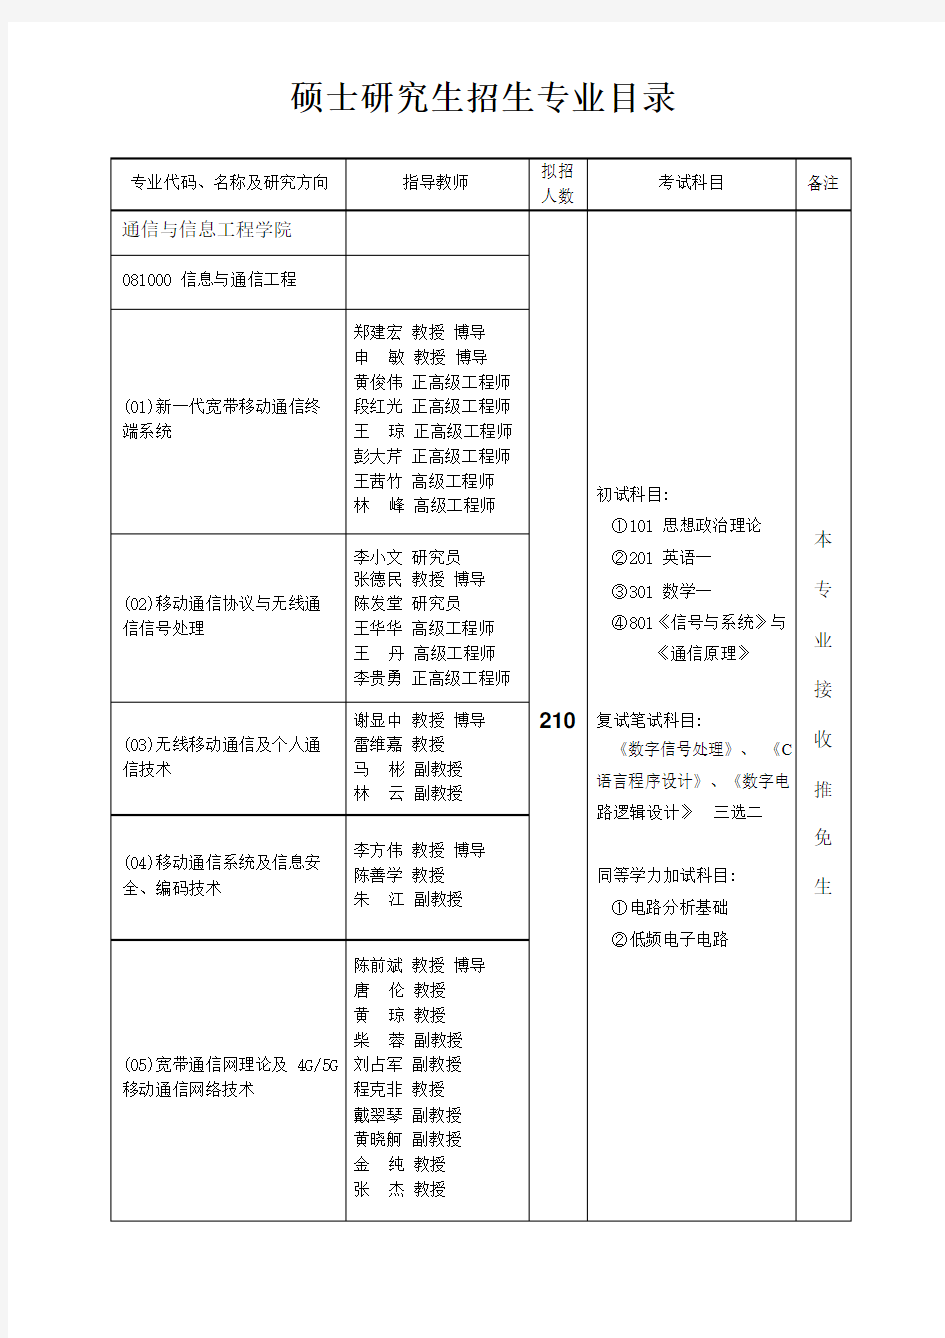 重庆邮电大学2016年硕士研究生报考指南(专业目录).pdf